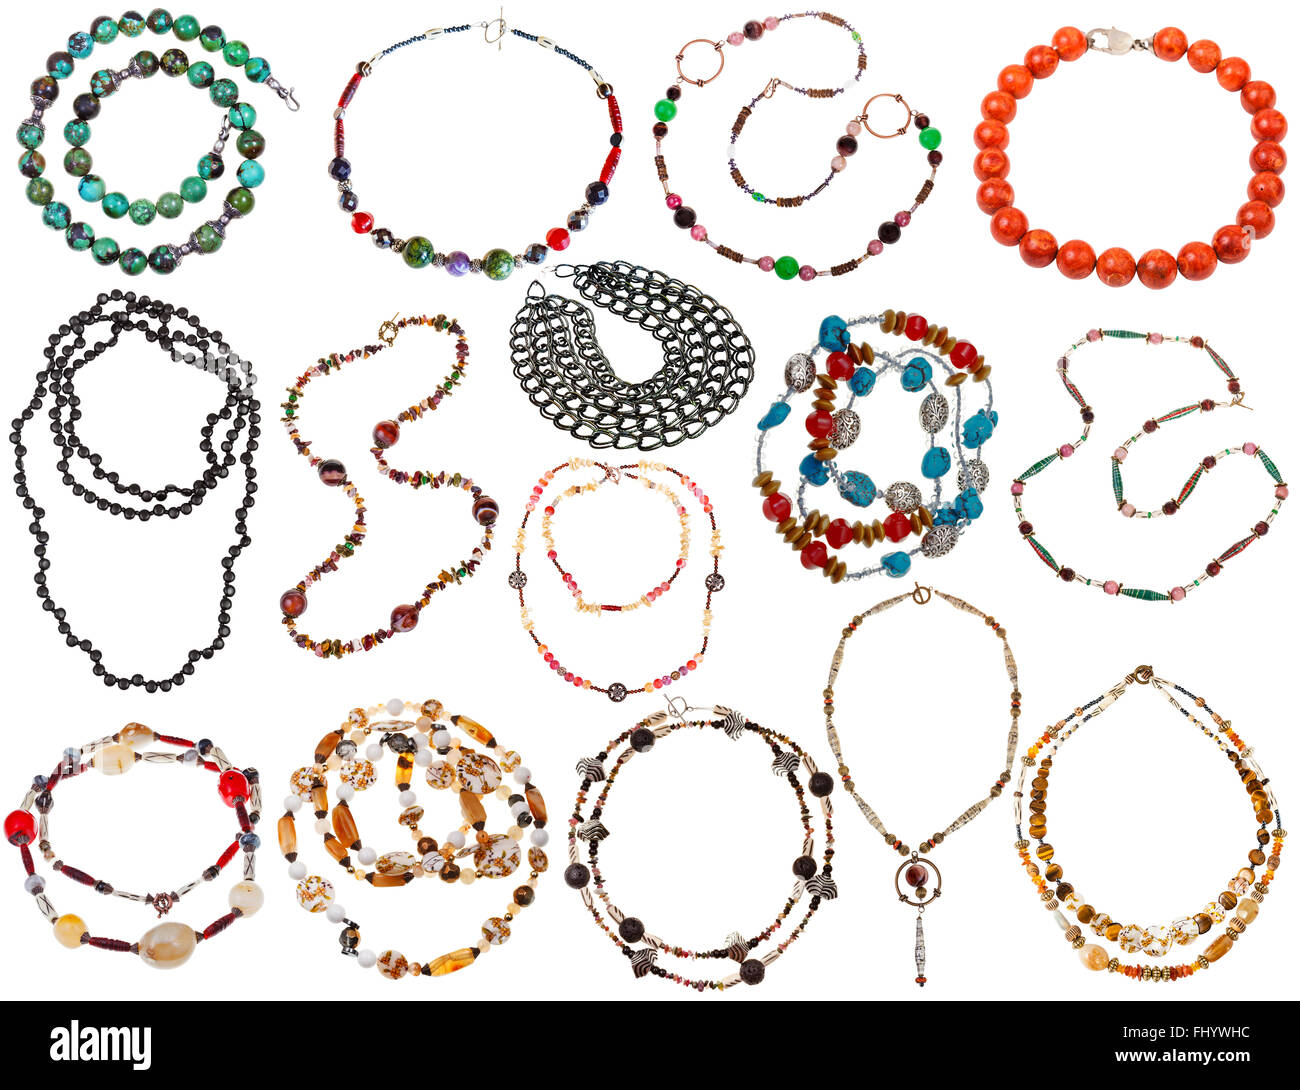 Ensemble de colliers de pierres naturelles, corail, nacre, os, perles, chaîne isolé sur fond blanc Banque D'Images